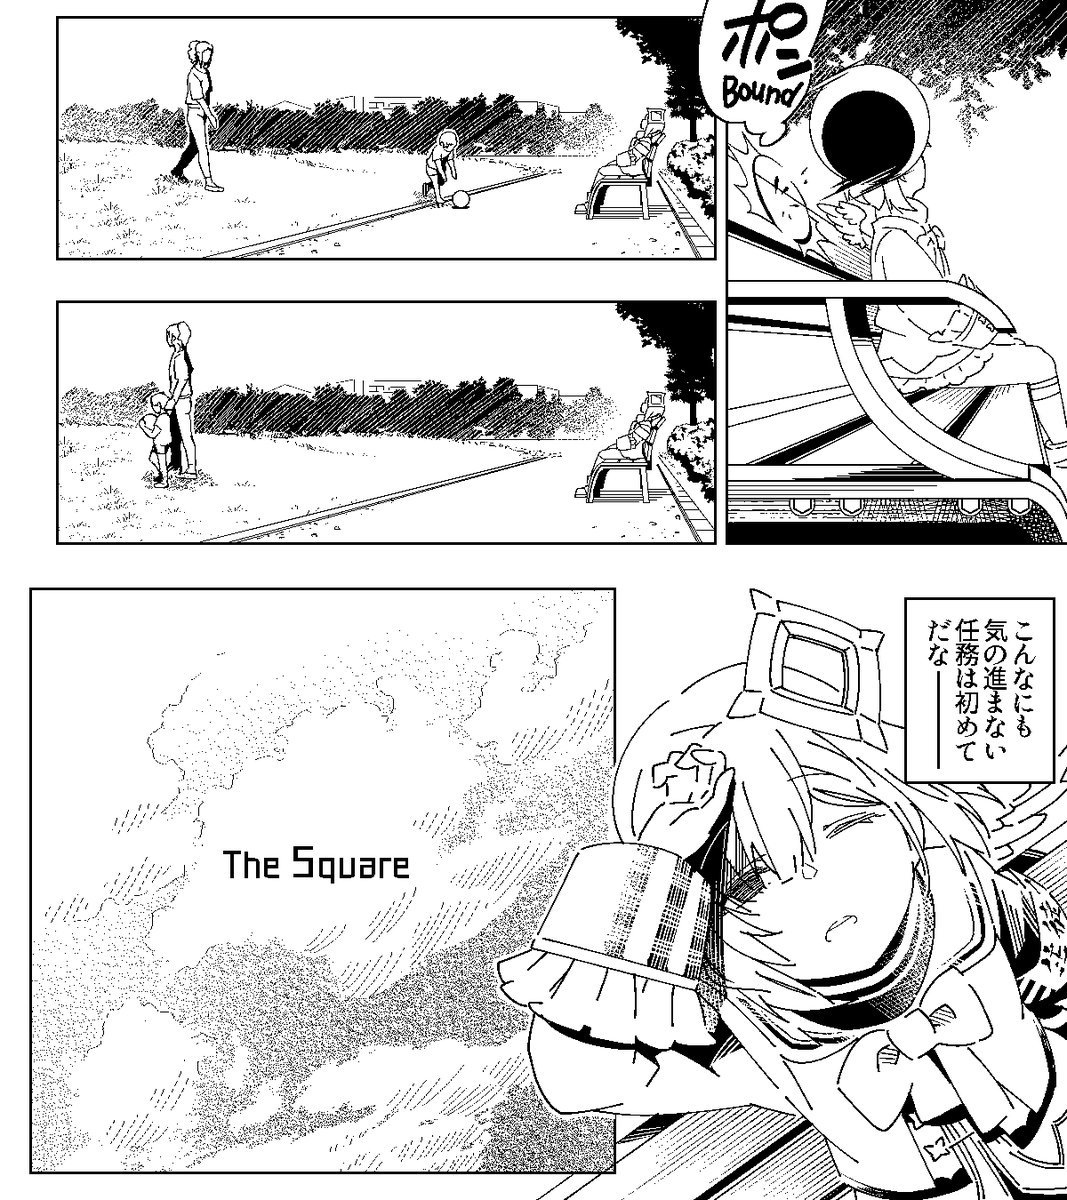 The Square [1/5] JP ver
#みかじ絵 #かなたーと #TOWART #ルーナート #つのまきあーと 